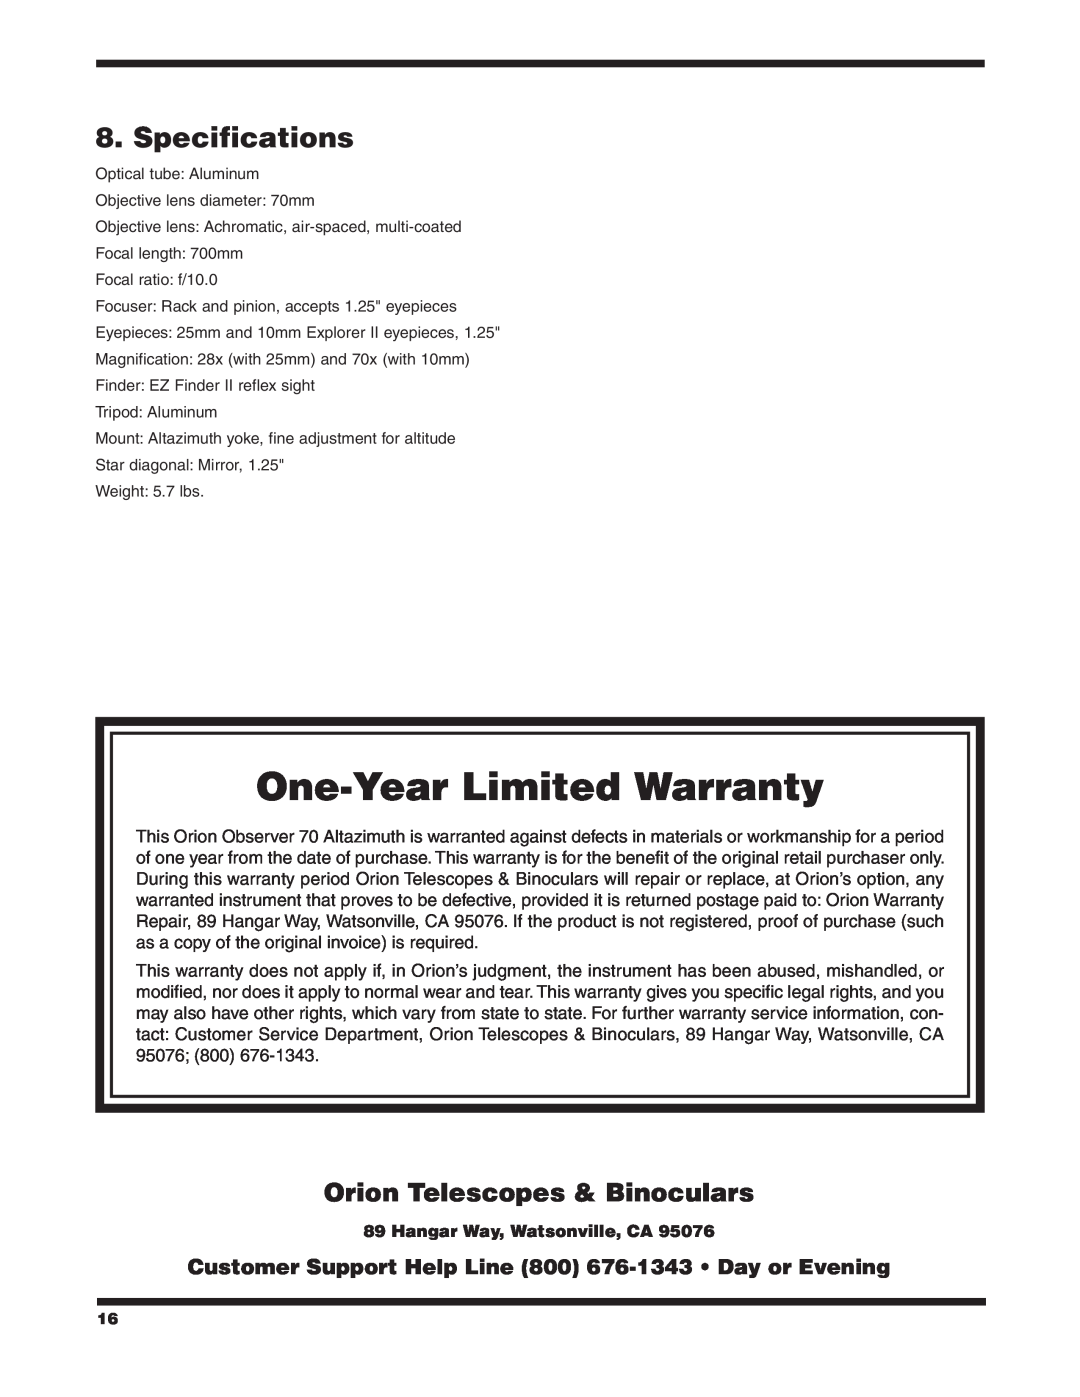 Orion 70MM AZ Specifications, Orion Telescopes & Binoculars, One-YearLimited Warranty, Hangar Way, Watsonville, CA 